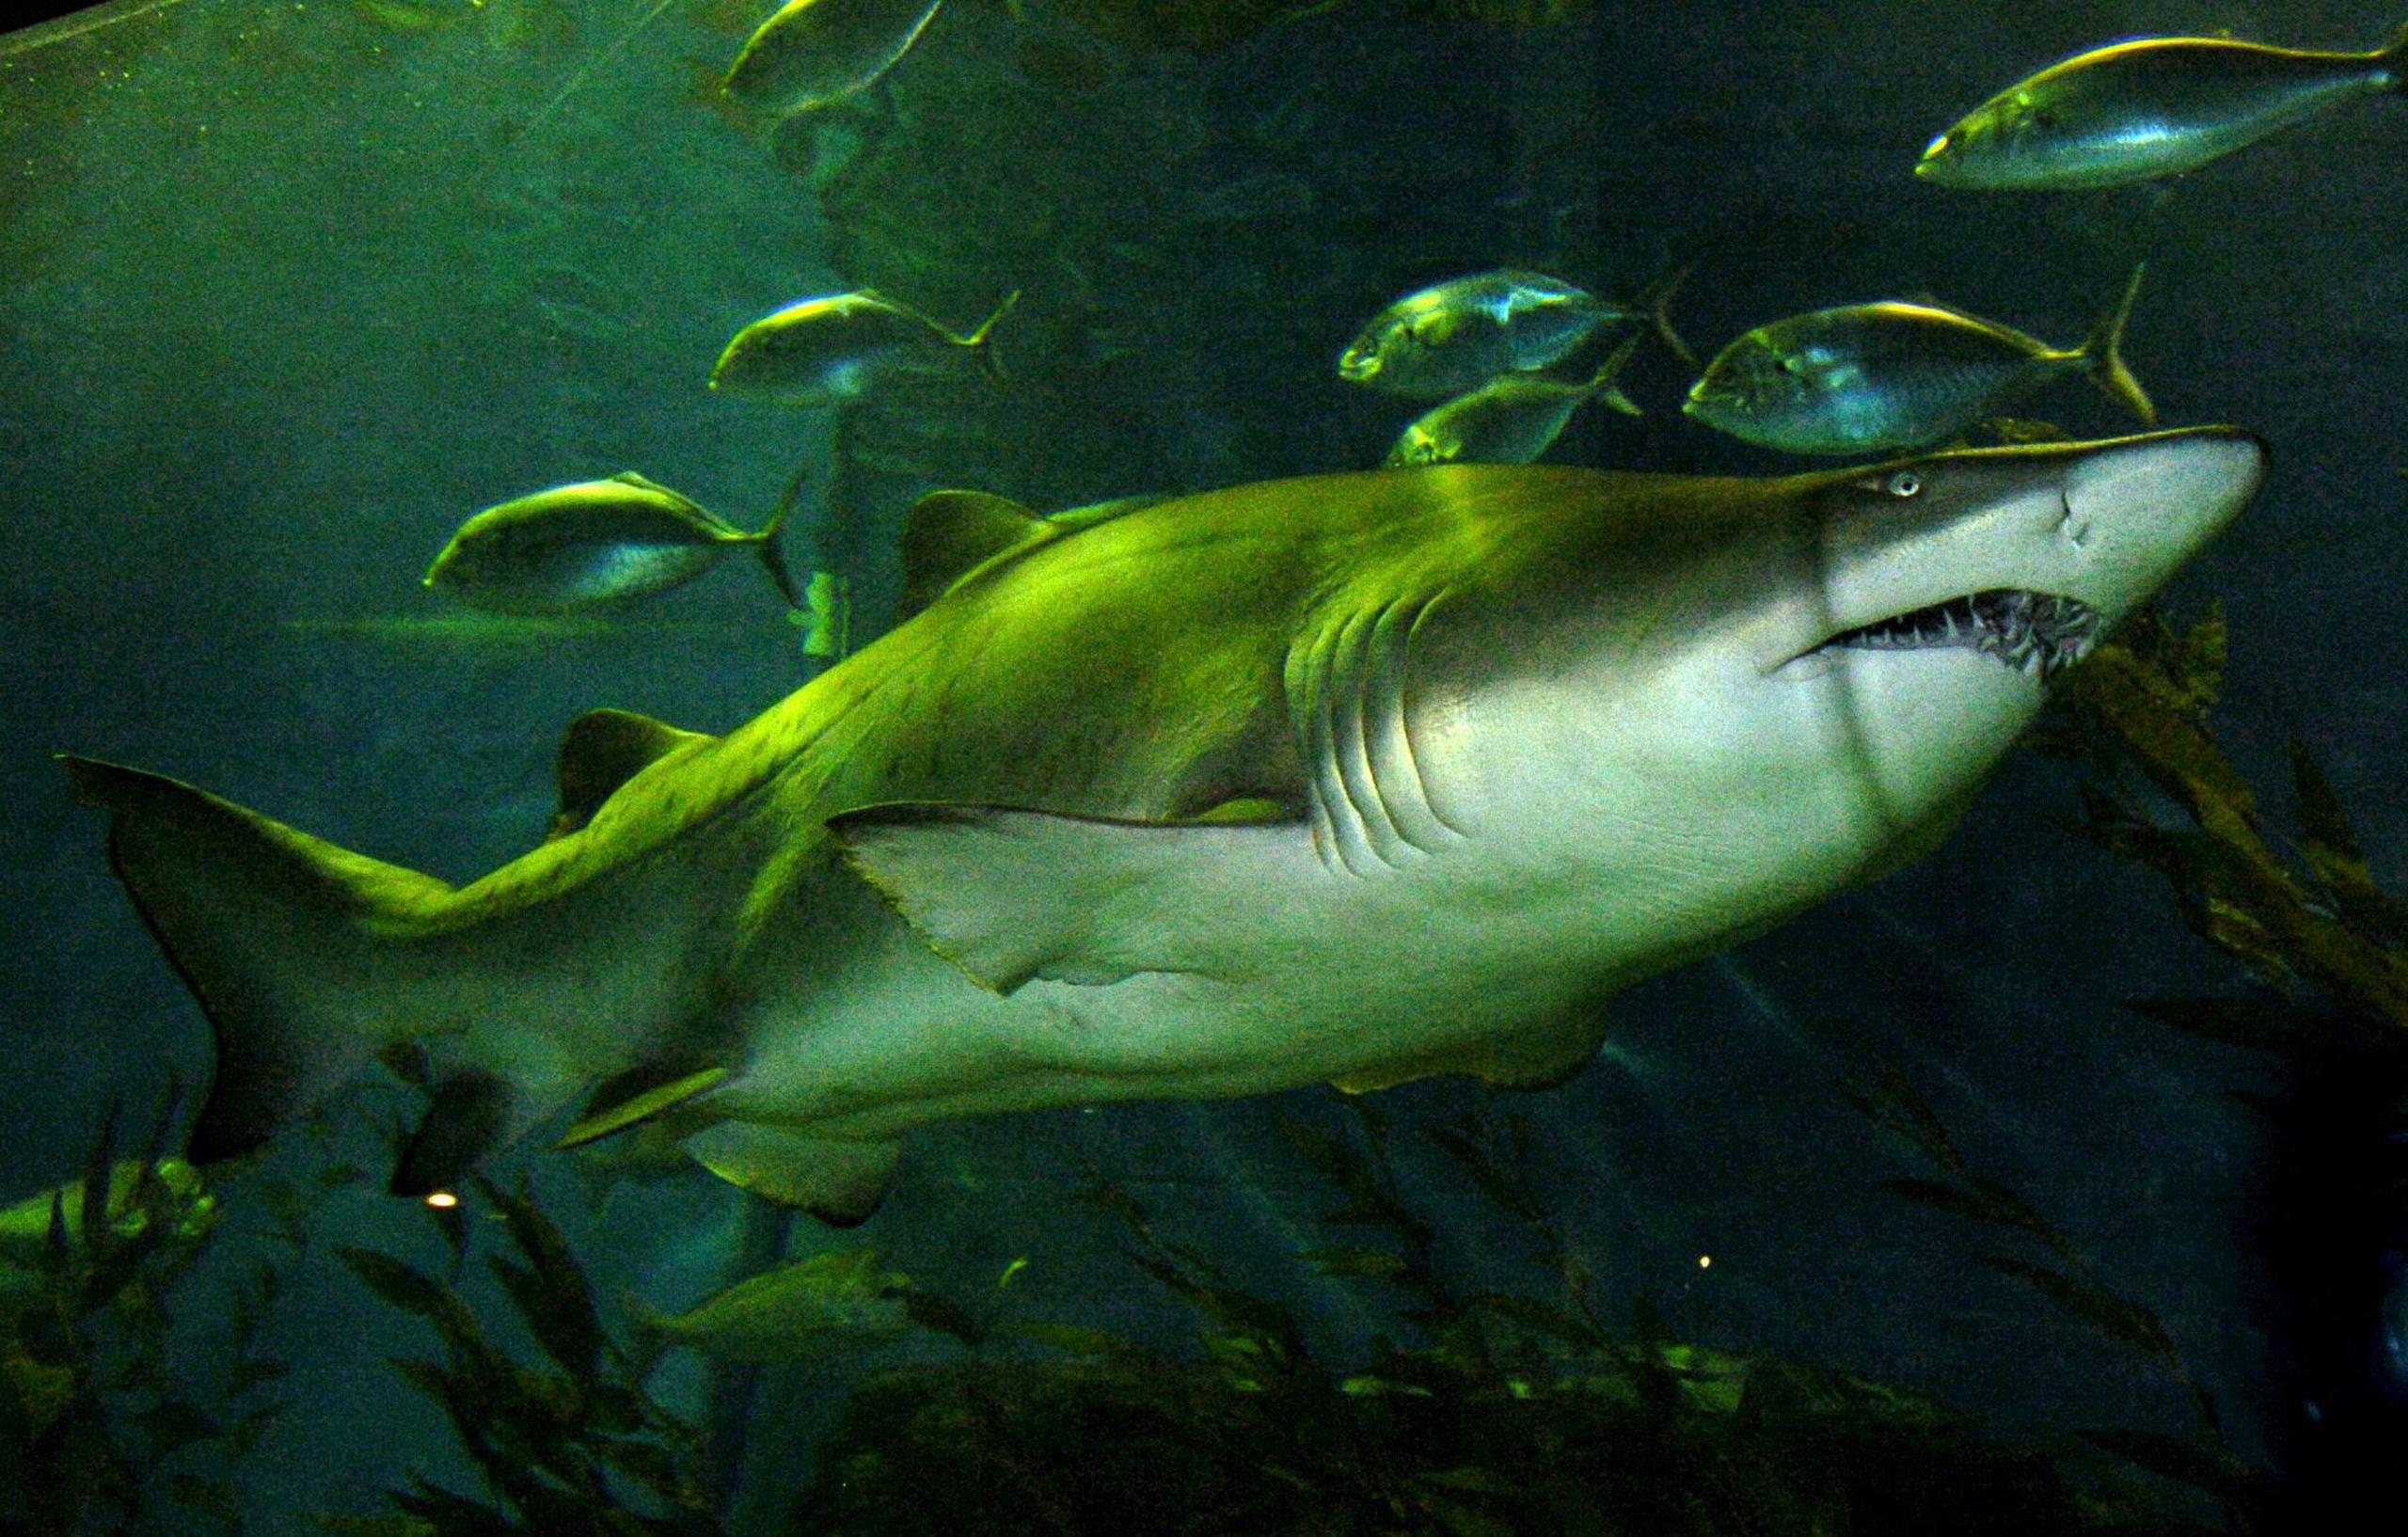 Un tiburón nodriza, especie marina habitualmente inofensiva para los humanos, mordió en un tobillo a un hombre en aguas de los Cayos de la Florida.